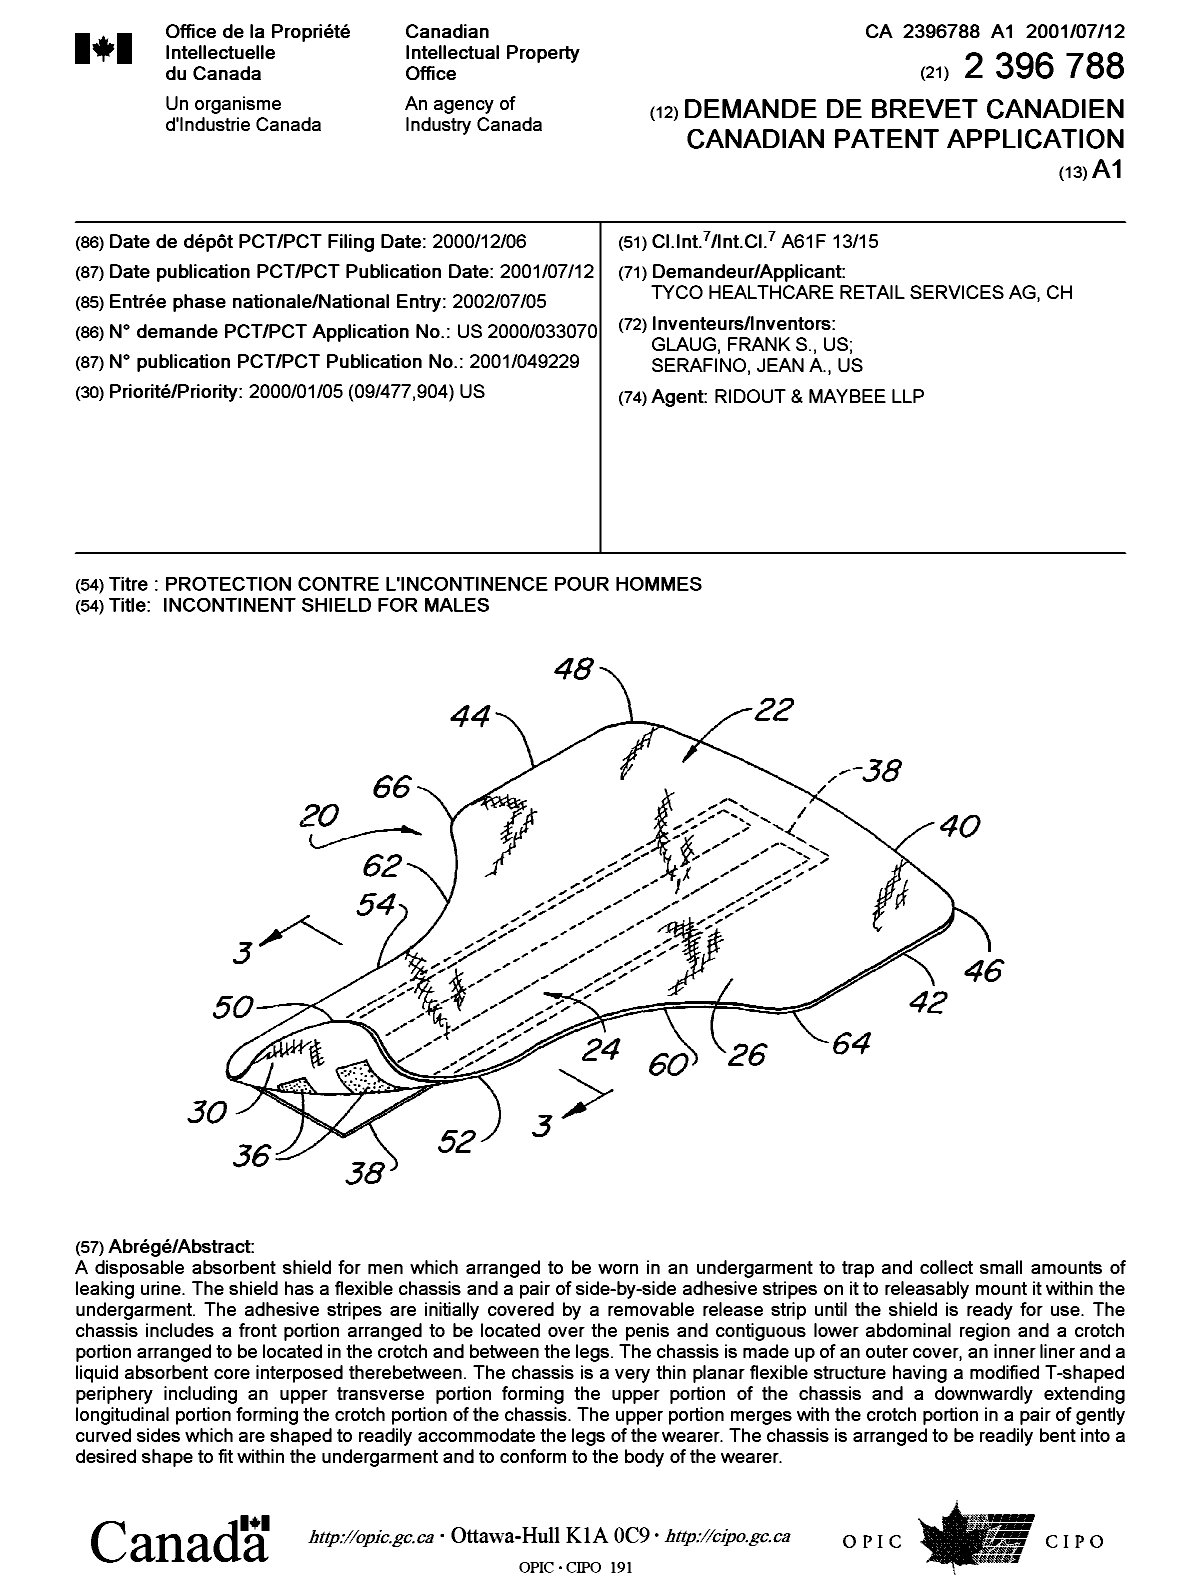 Document de brevet canadien 2396788. Page couverture 20021202. Image 1 de 1